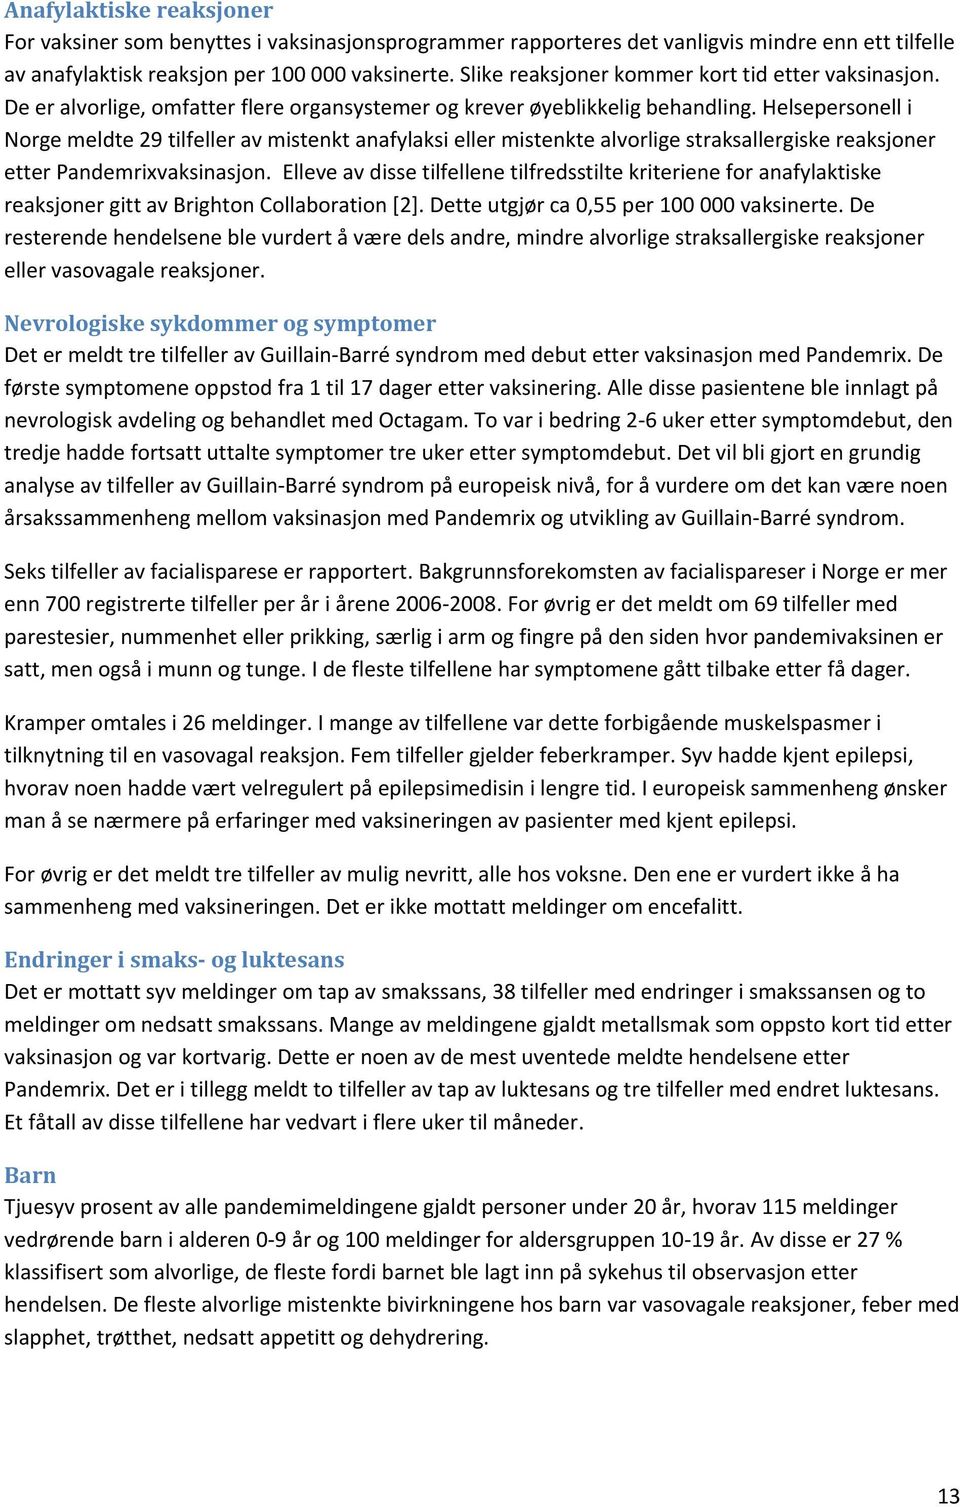 Helsepersonell i Norge meldte 29 tilfeller av mistenkt anafylaksi eller mistenkte alvorlige straksallergiske reaksjoner etter Pandemrixvaksinasjon.